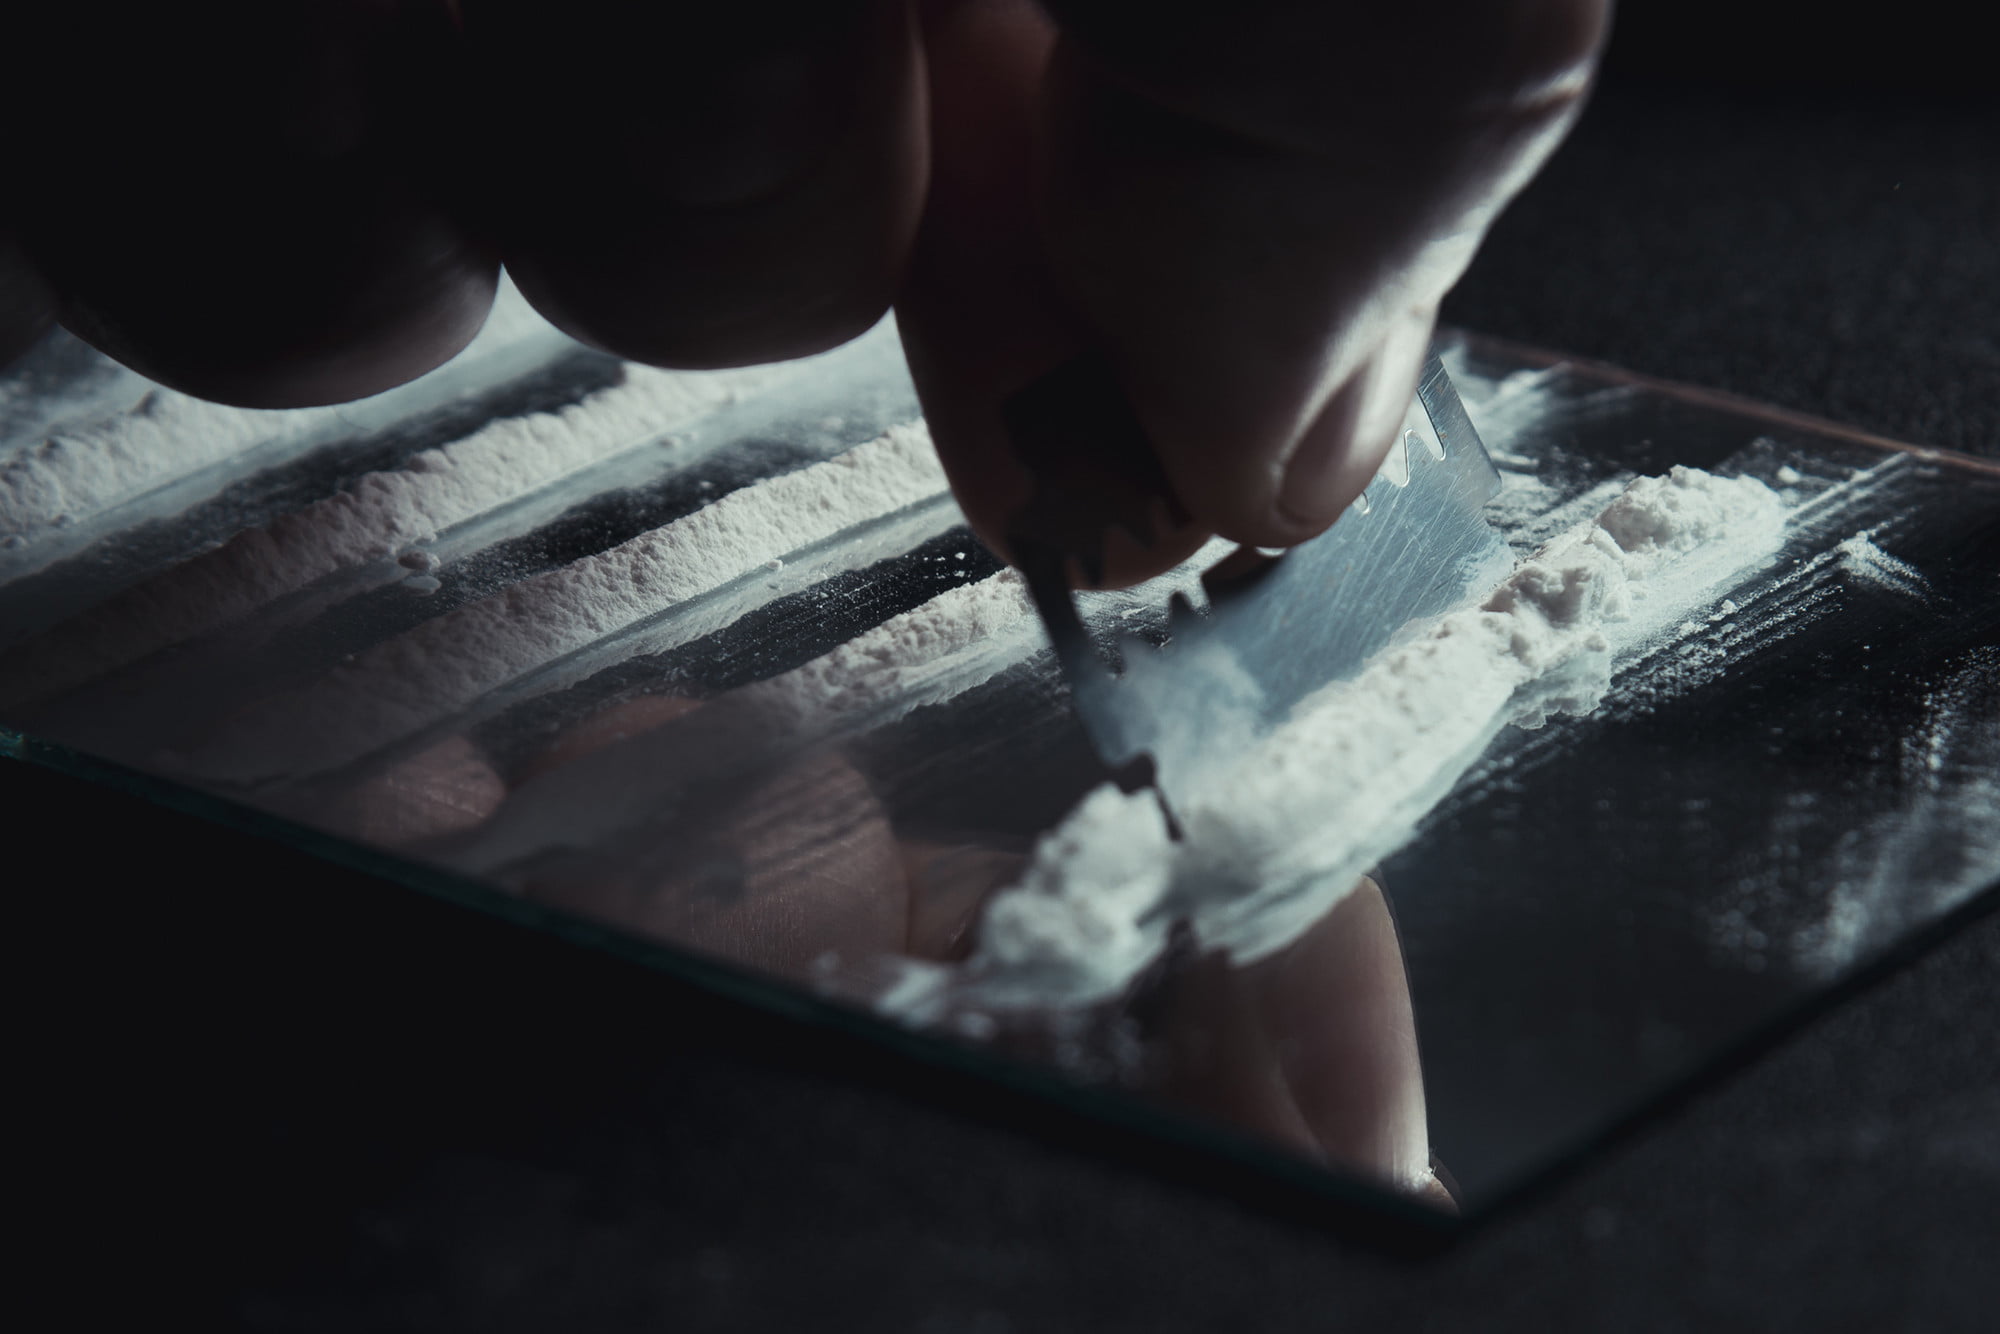 Por alta cantidad de producción, La cocaína gana terreno en Europa